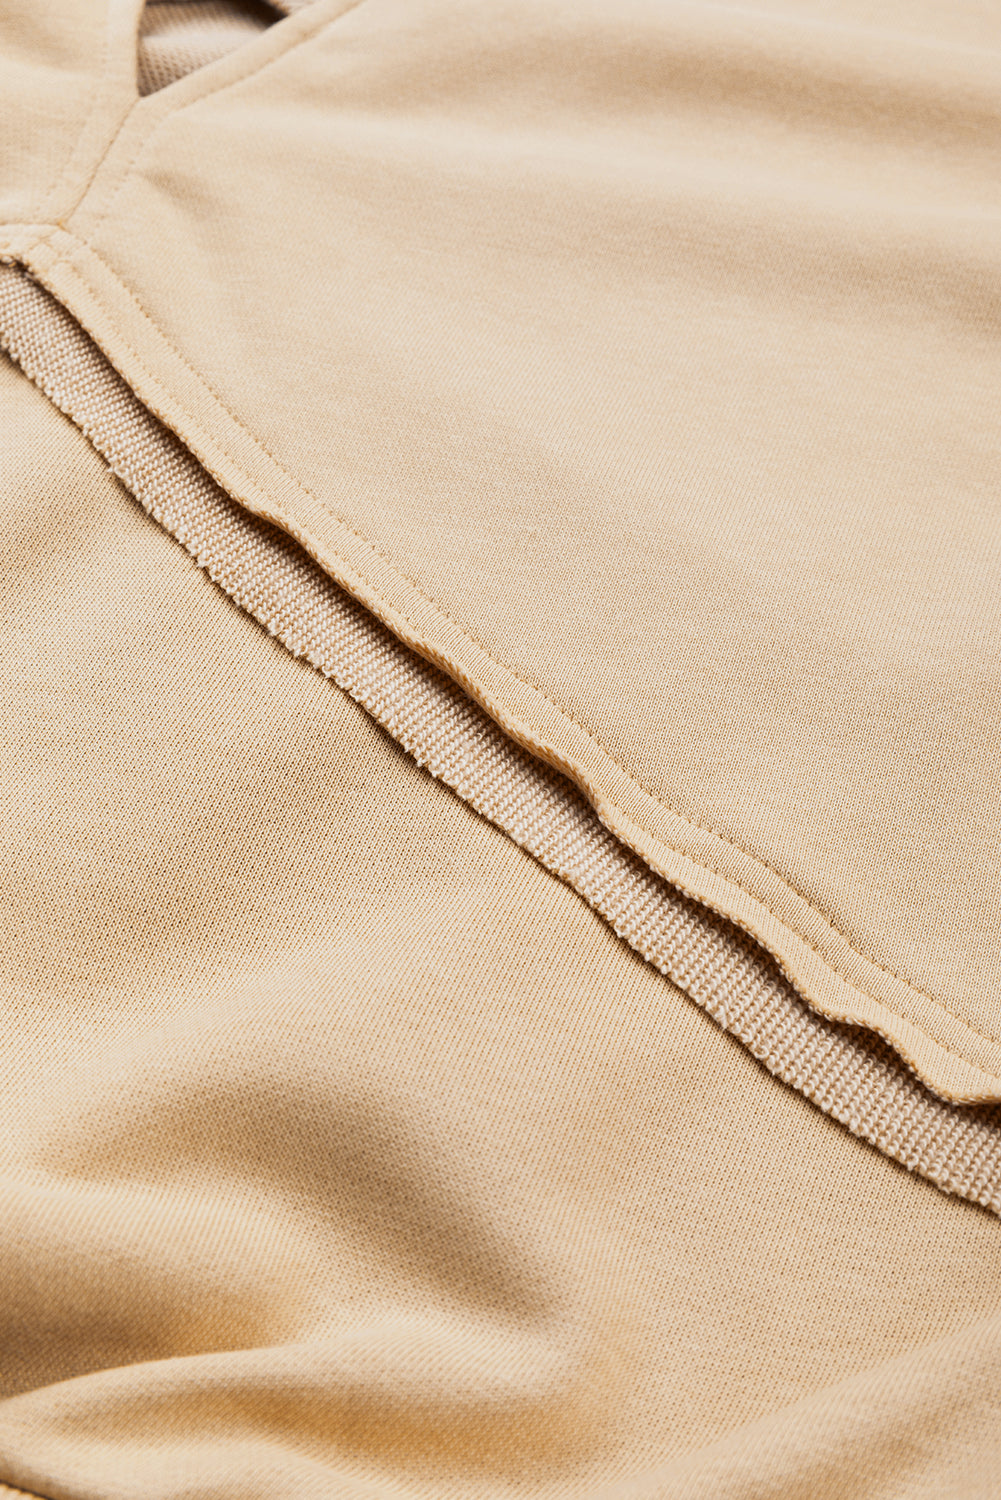 Sweat-shirt en treillis de couleur unie beige français clair, dos ajouré